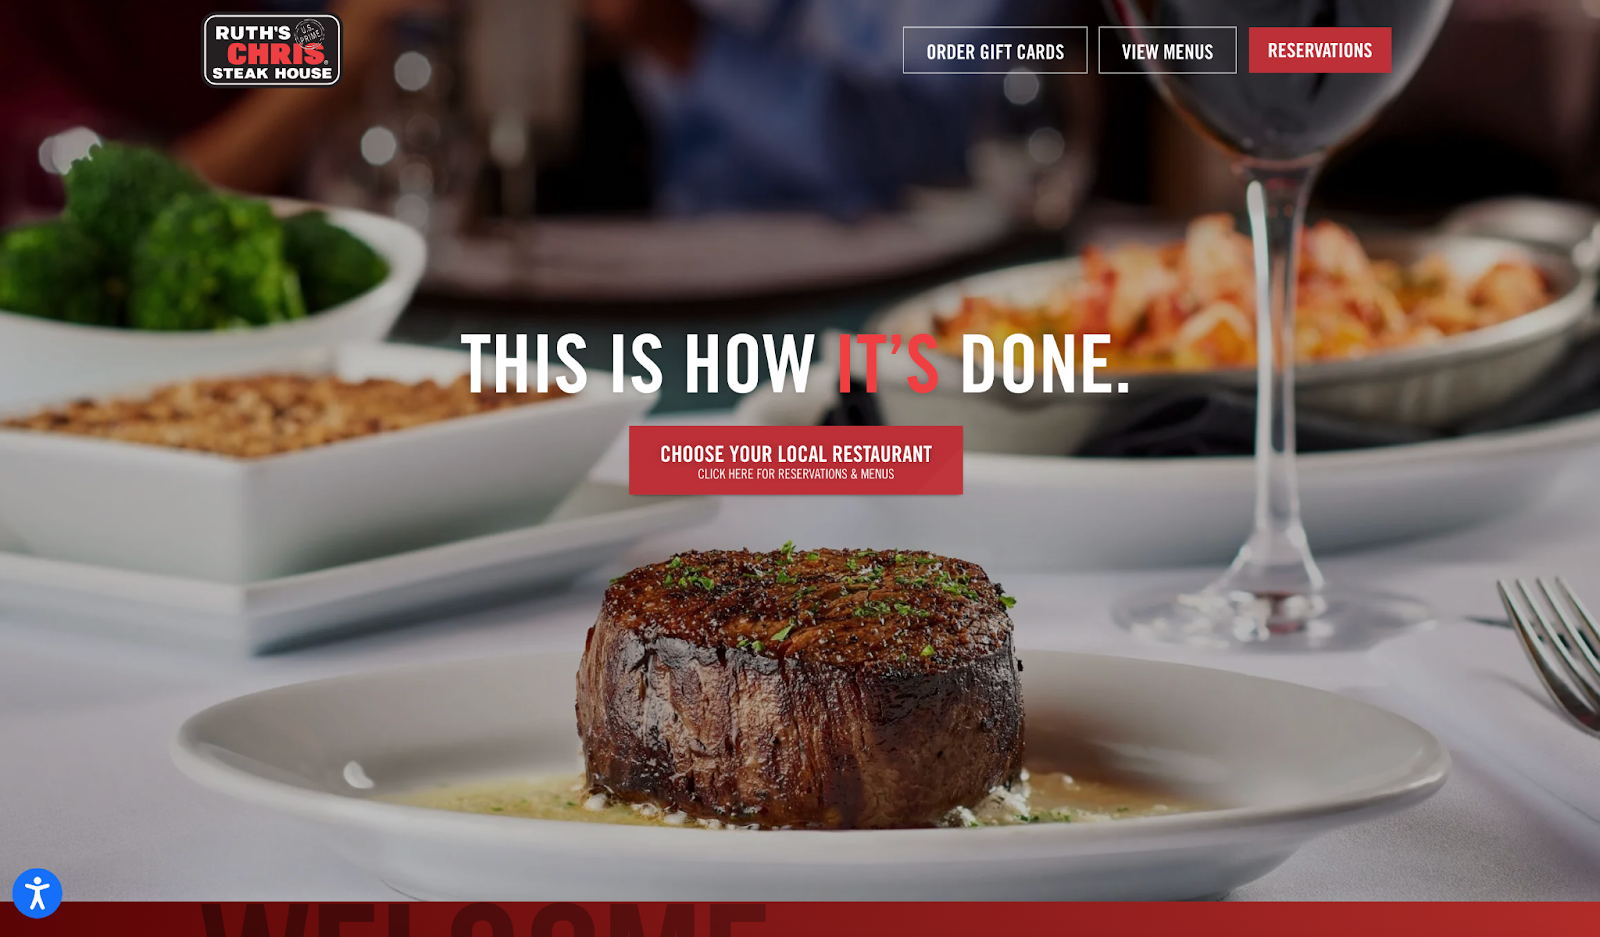 ruths chris steak house homepage